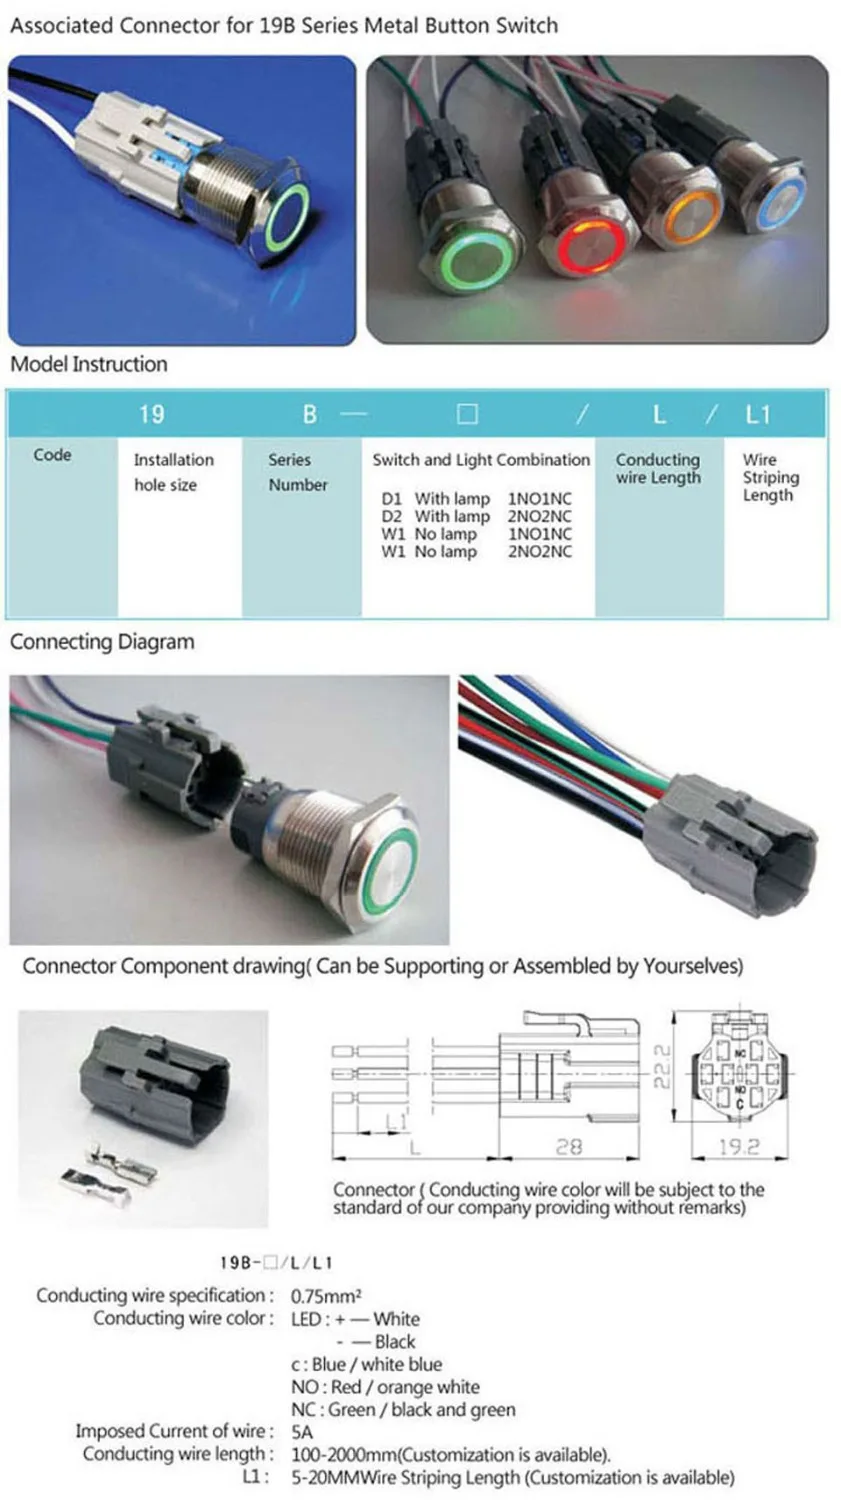 19 мм жгут проводов (для переключателя IB 19B тип без подсветки или с подсветкой 1NO1NC)